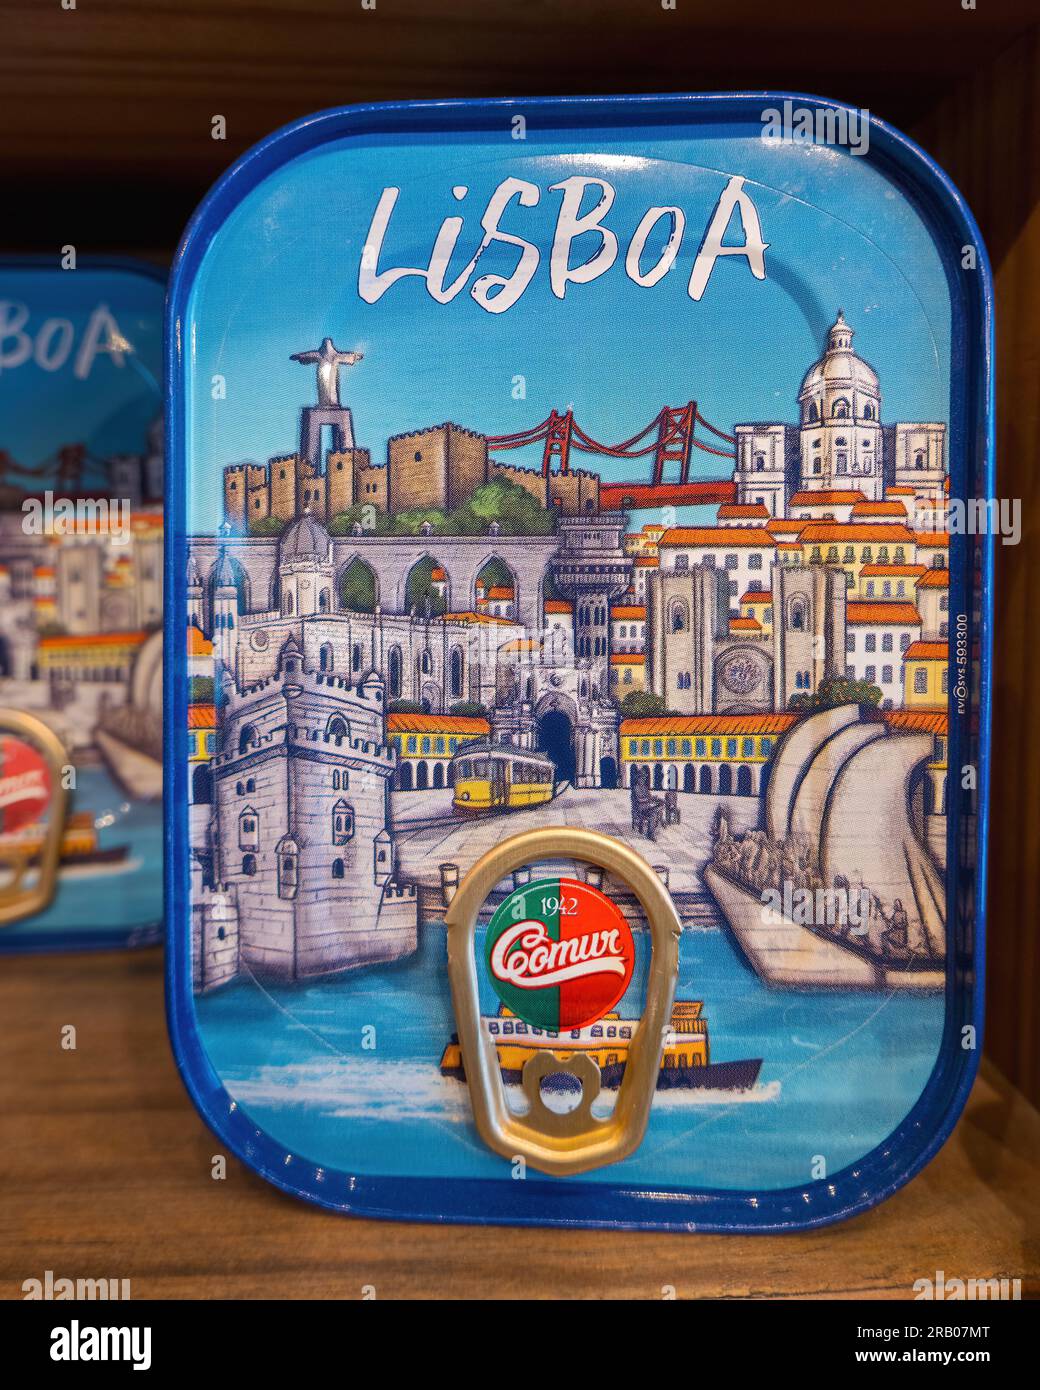 Poisson en conserve par Comur 1942 à vendre à Lisbonne, Portugal. Souvenir de Lisbonne, cabillaud Bacalhau cuit à l'huile d'olive avec de l'ail. conservas décoratifs, boîtes de poisson. Banque D'Images